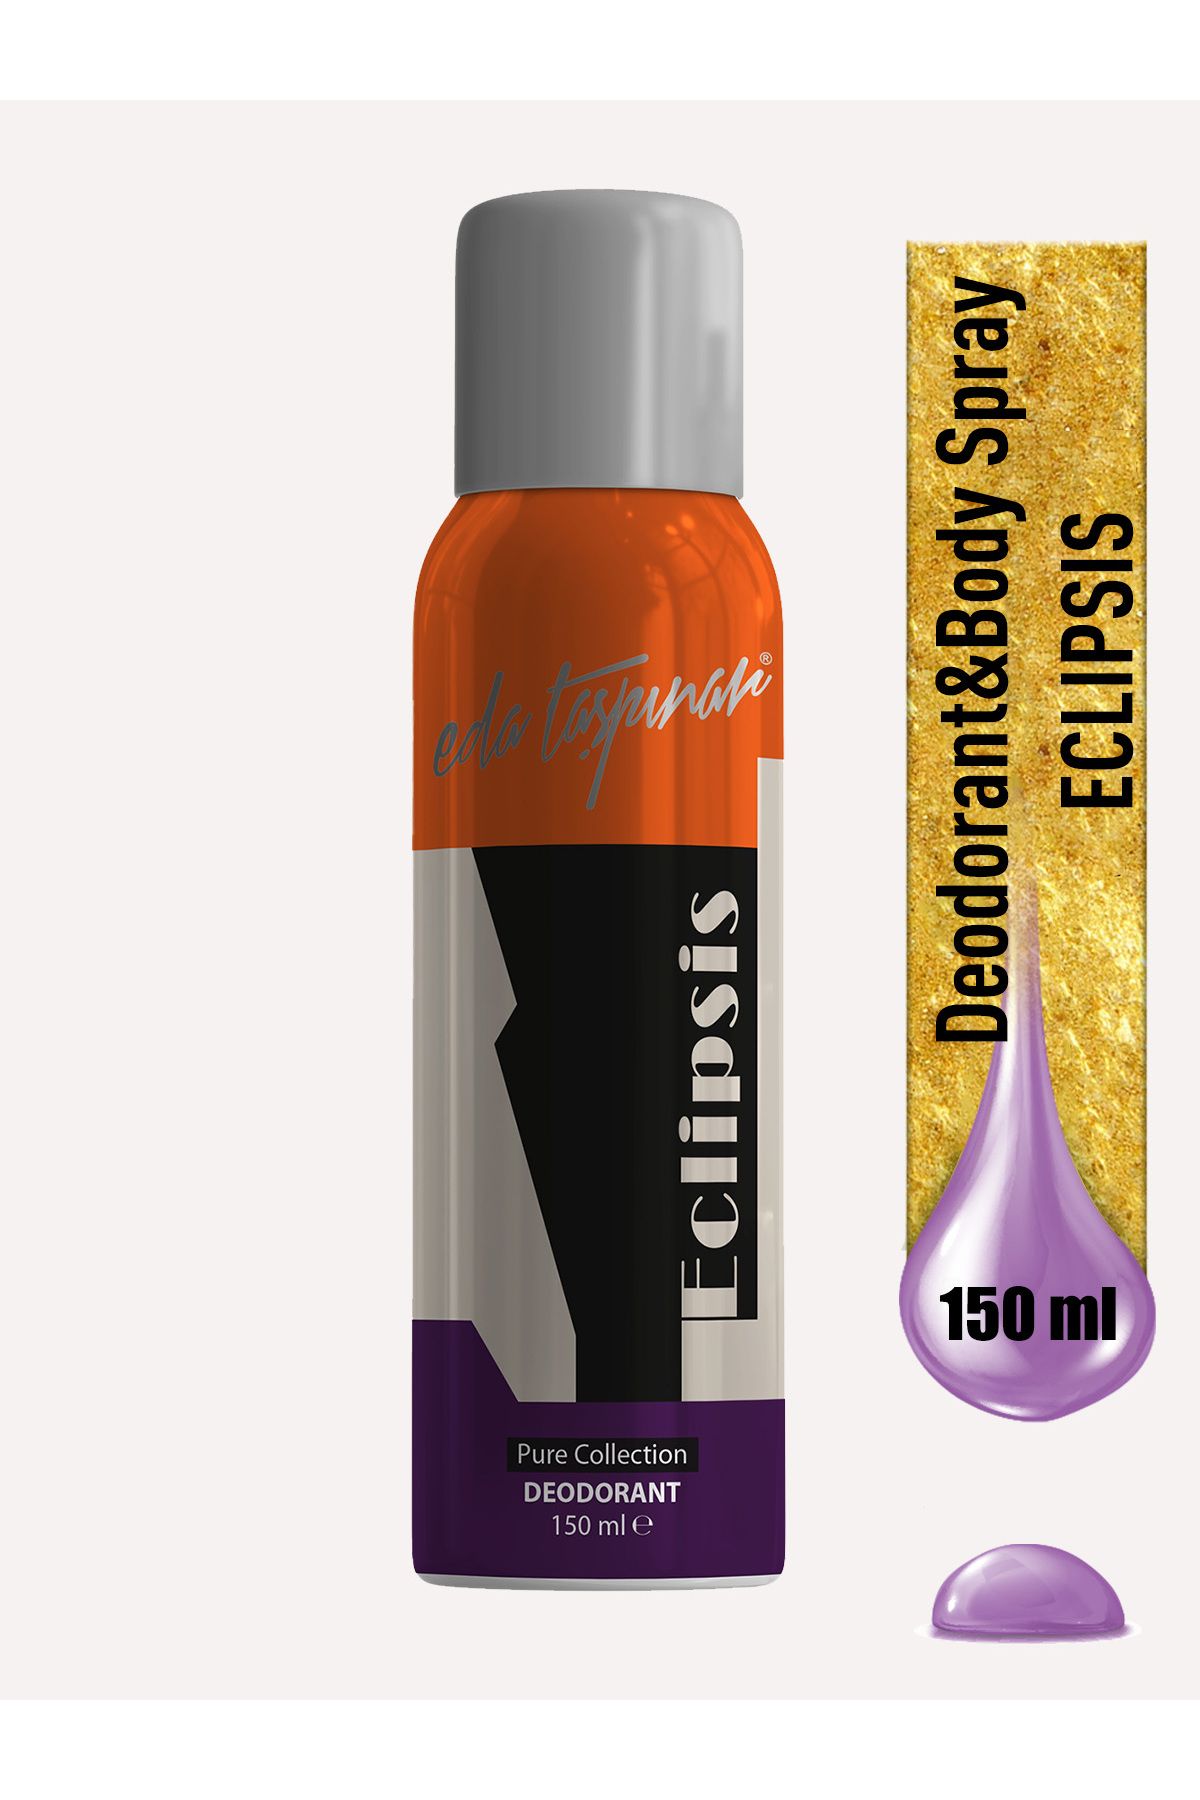 Eda Taşpınar Eclipsis Kadın Deodorant - 150 ml